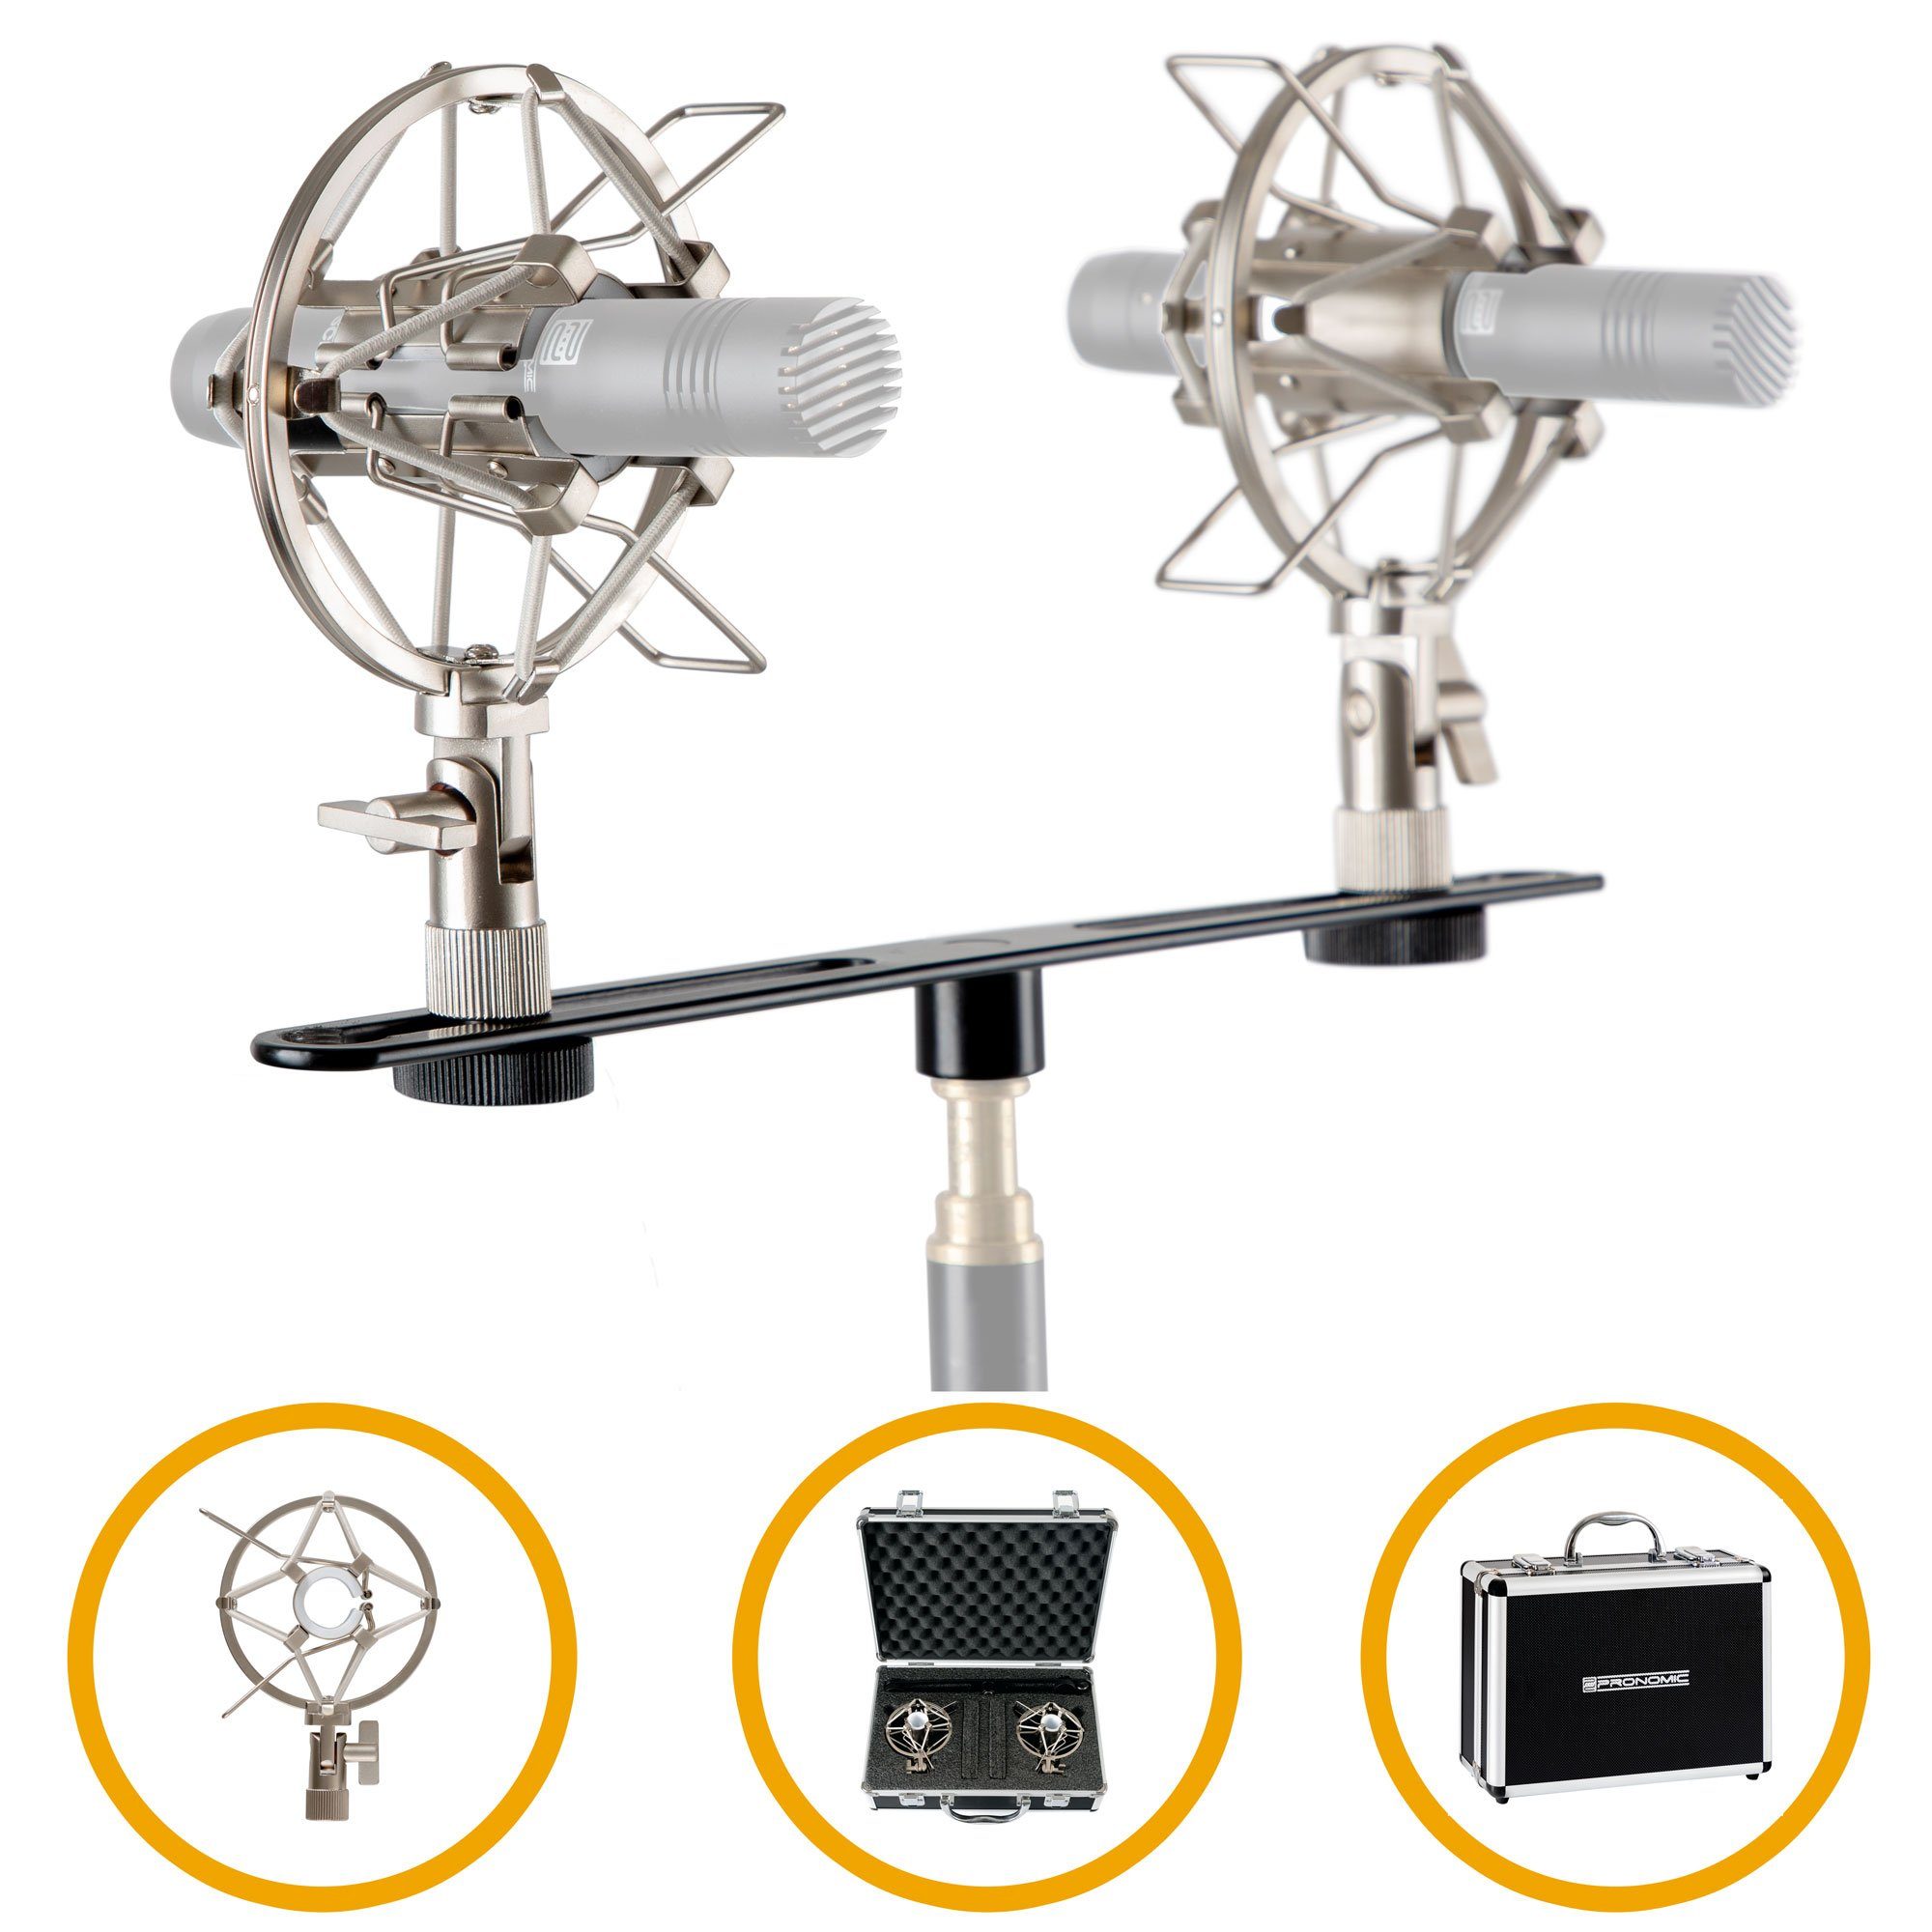 Pronomic Stereo Zubehörset für Kleinmenmbran Mikrofone - Hochwertiger Koffer mit 1 x T-Bar Stereoschiene und 2 x Spinne - Ideal für hochwertige Overhead Aufnahmen auf Bühne und im Studio Mikrofon-Halterung, (Zubehörset für Kleinmembranmikrofone)